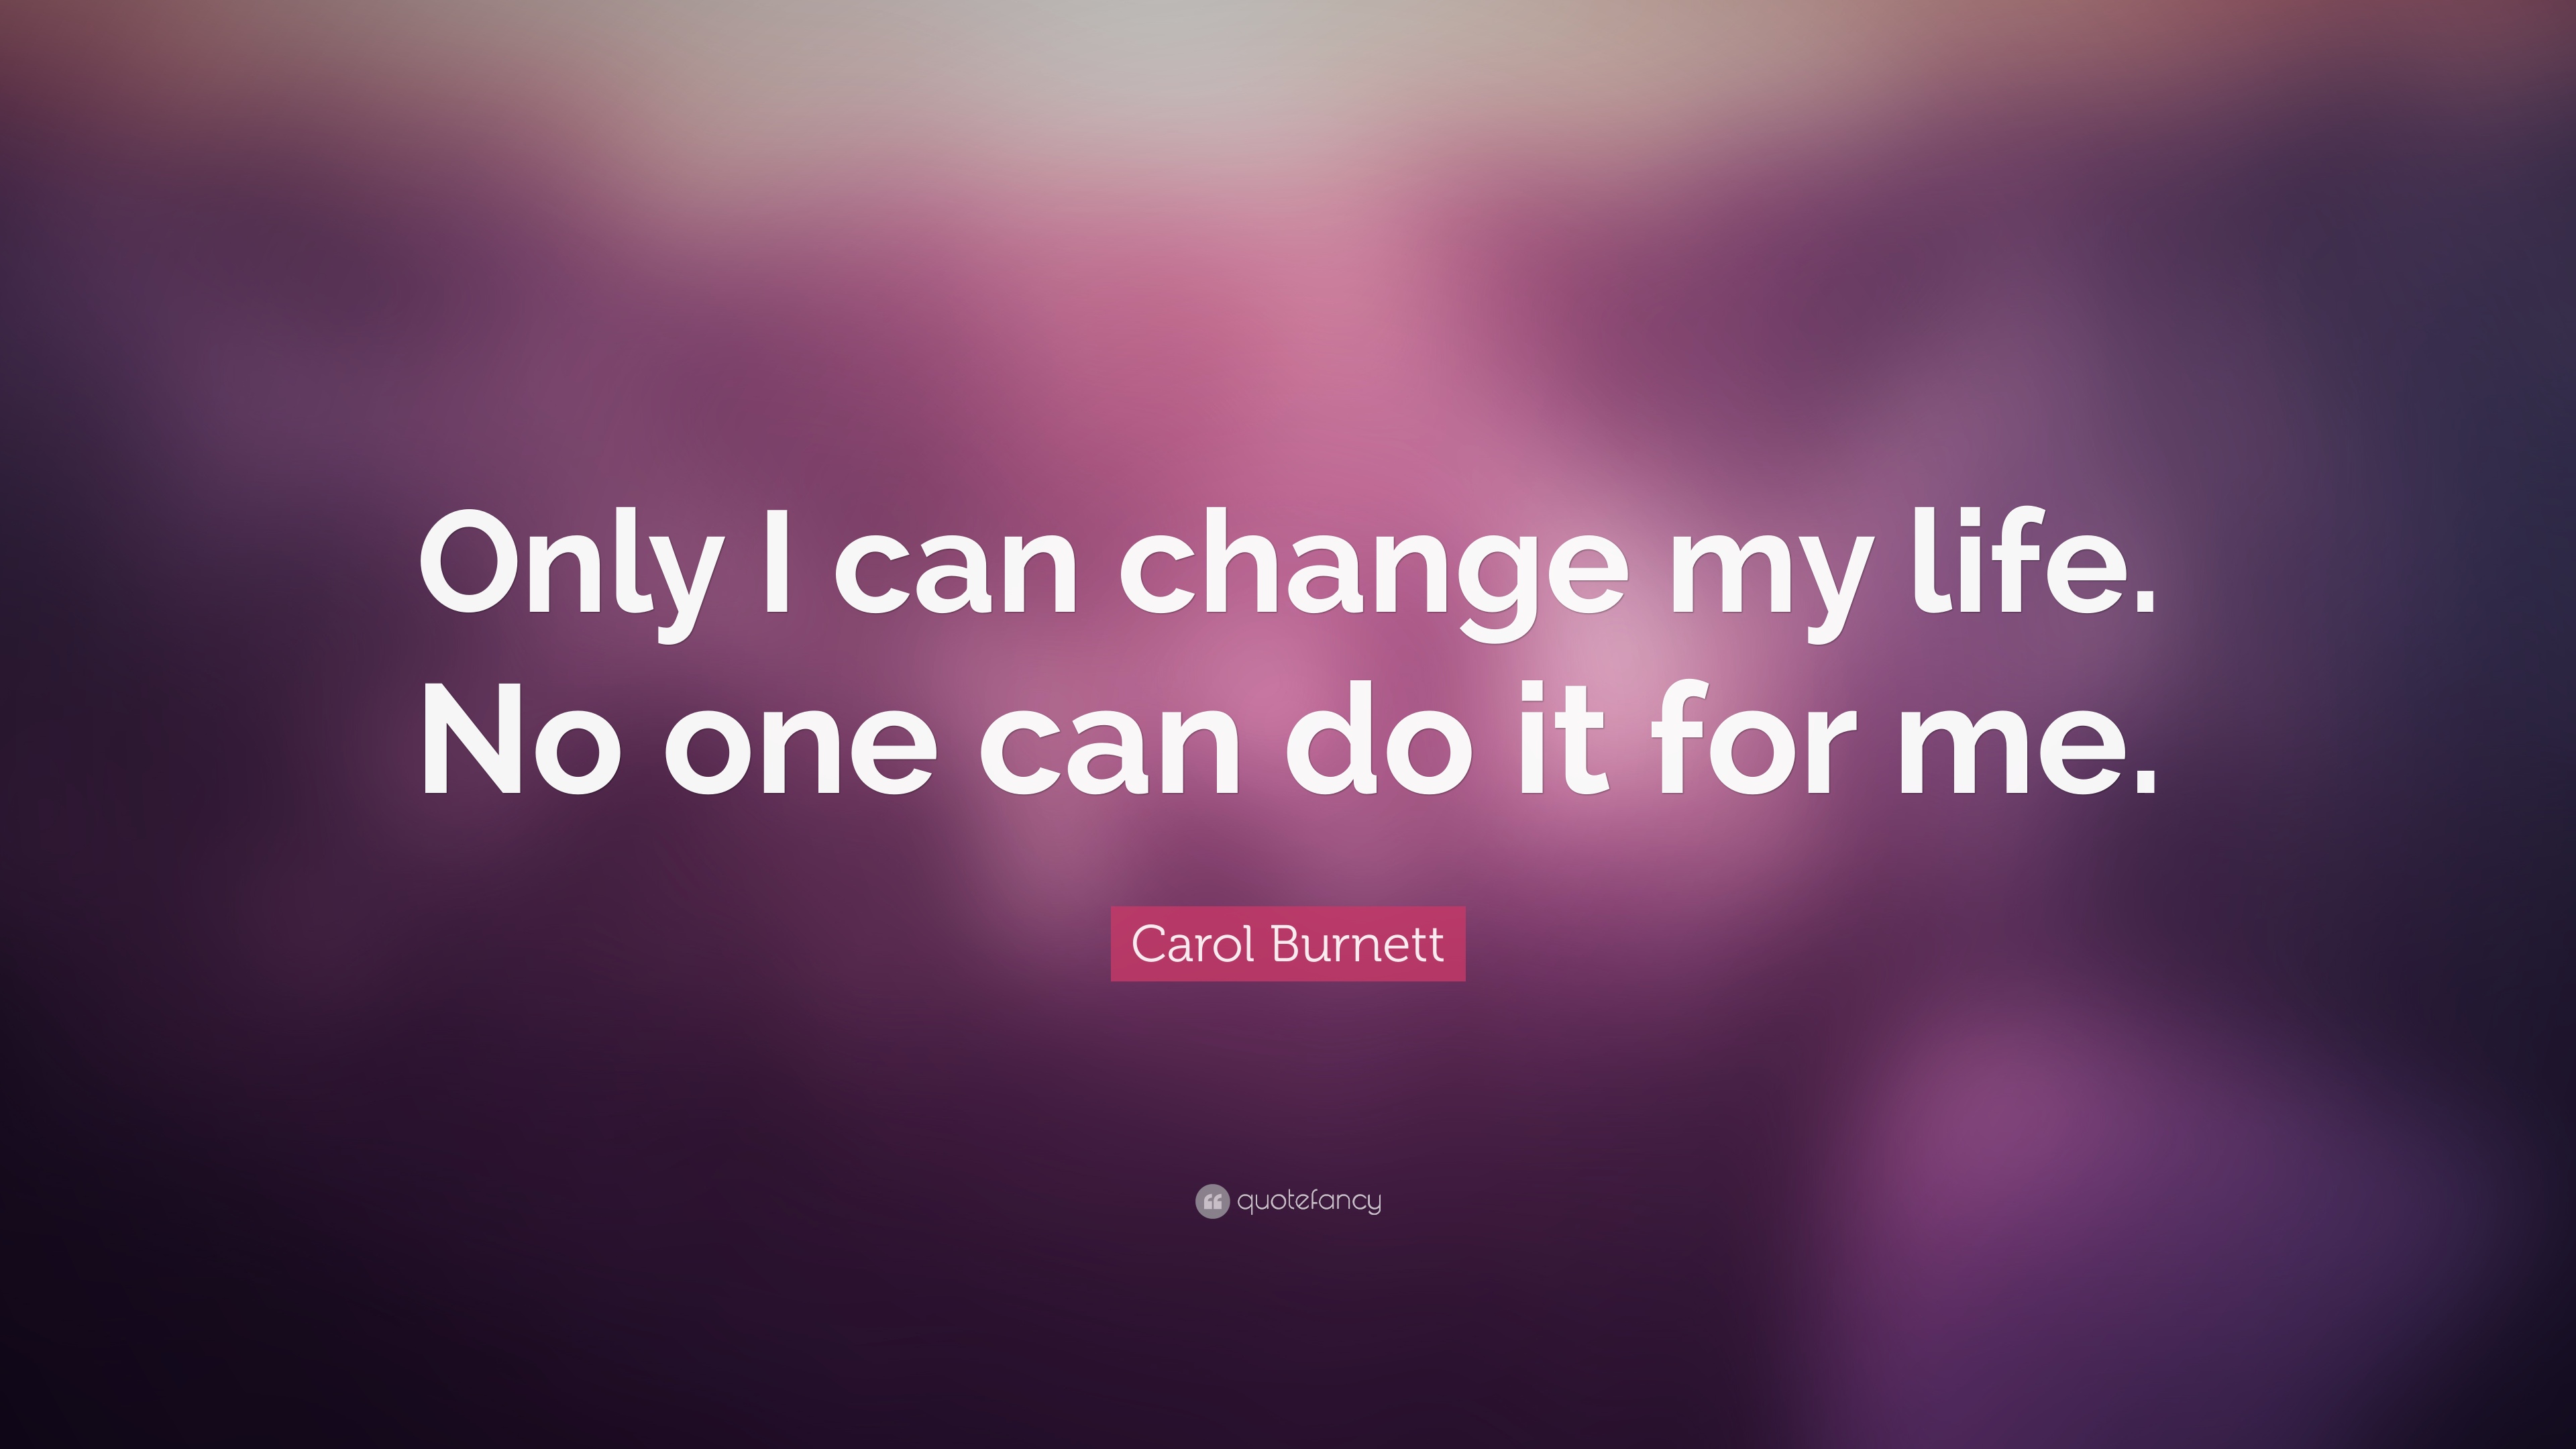 10 Best Carol Burnett Quotes